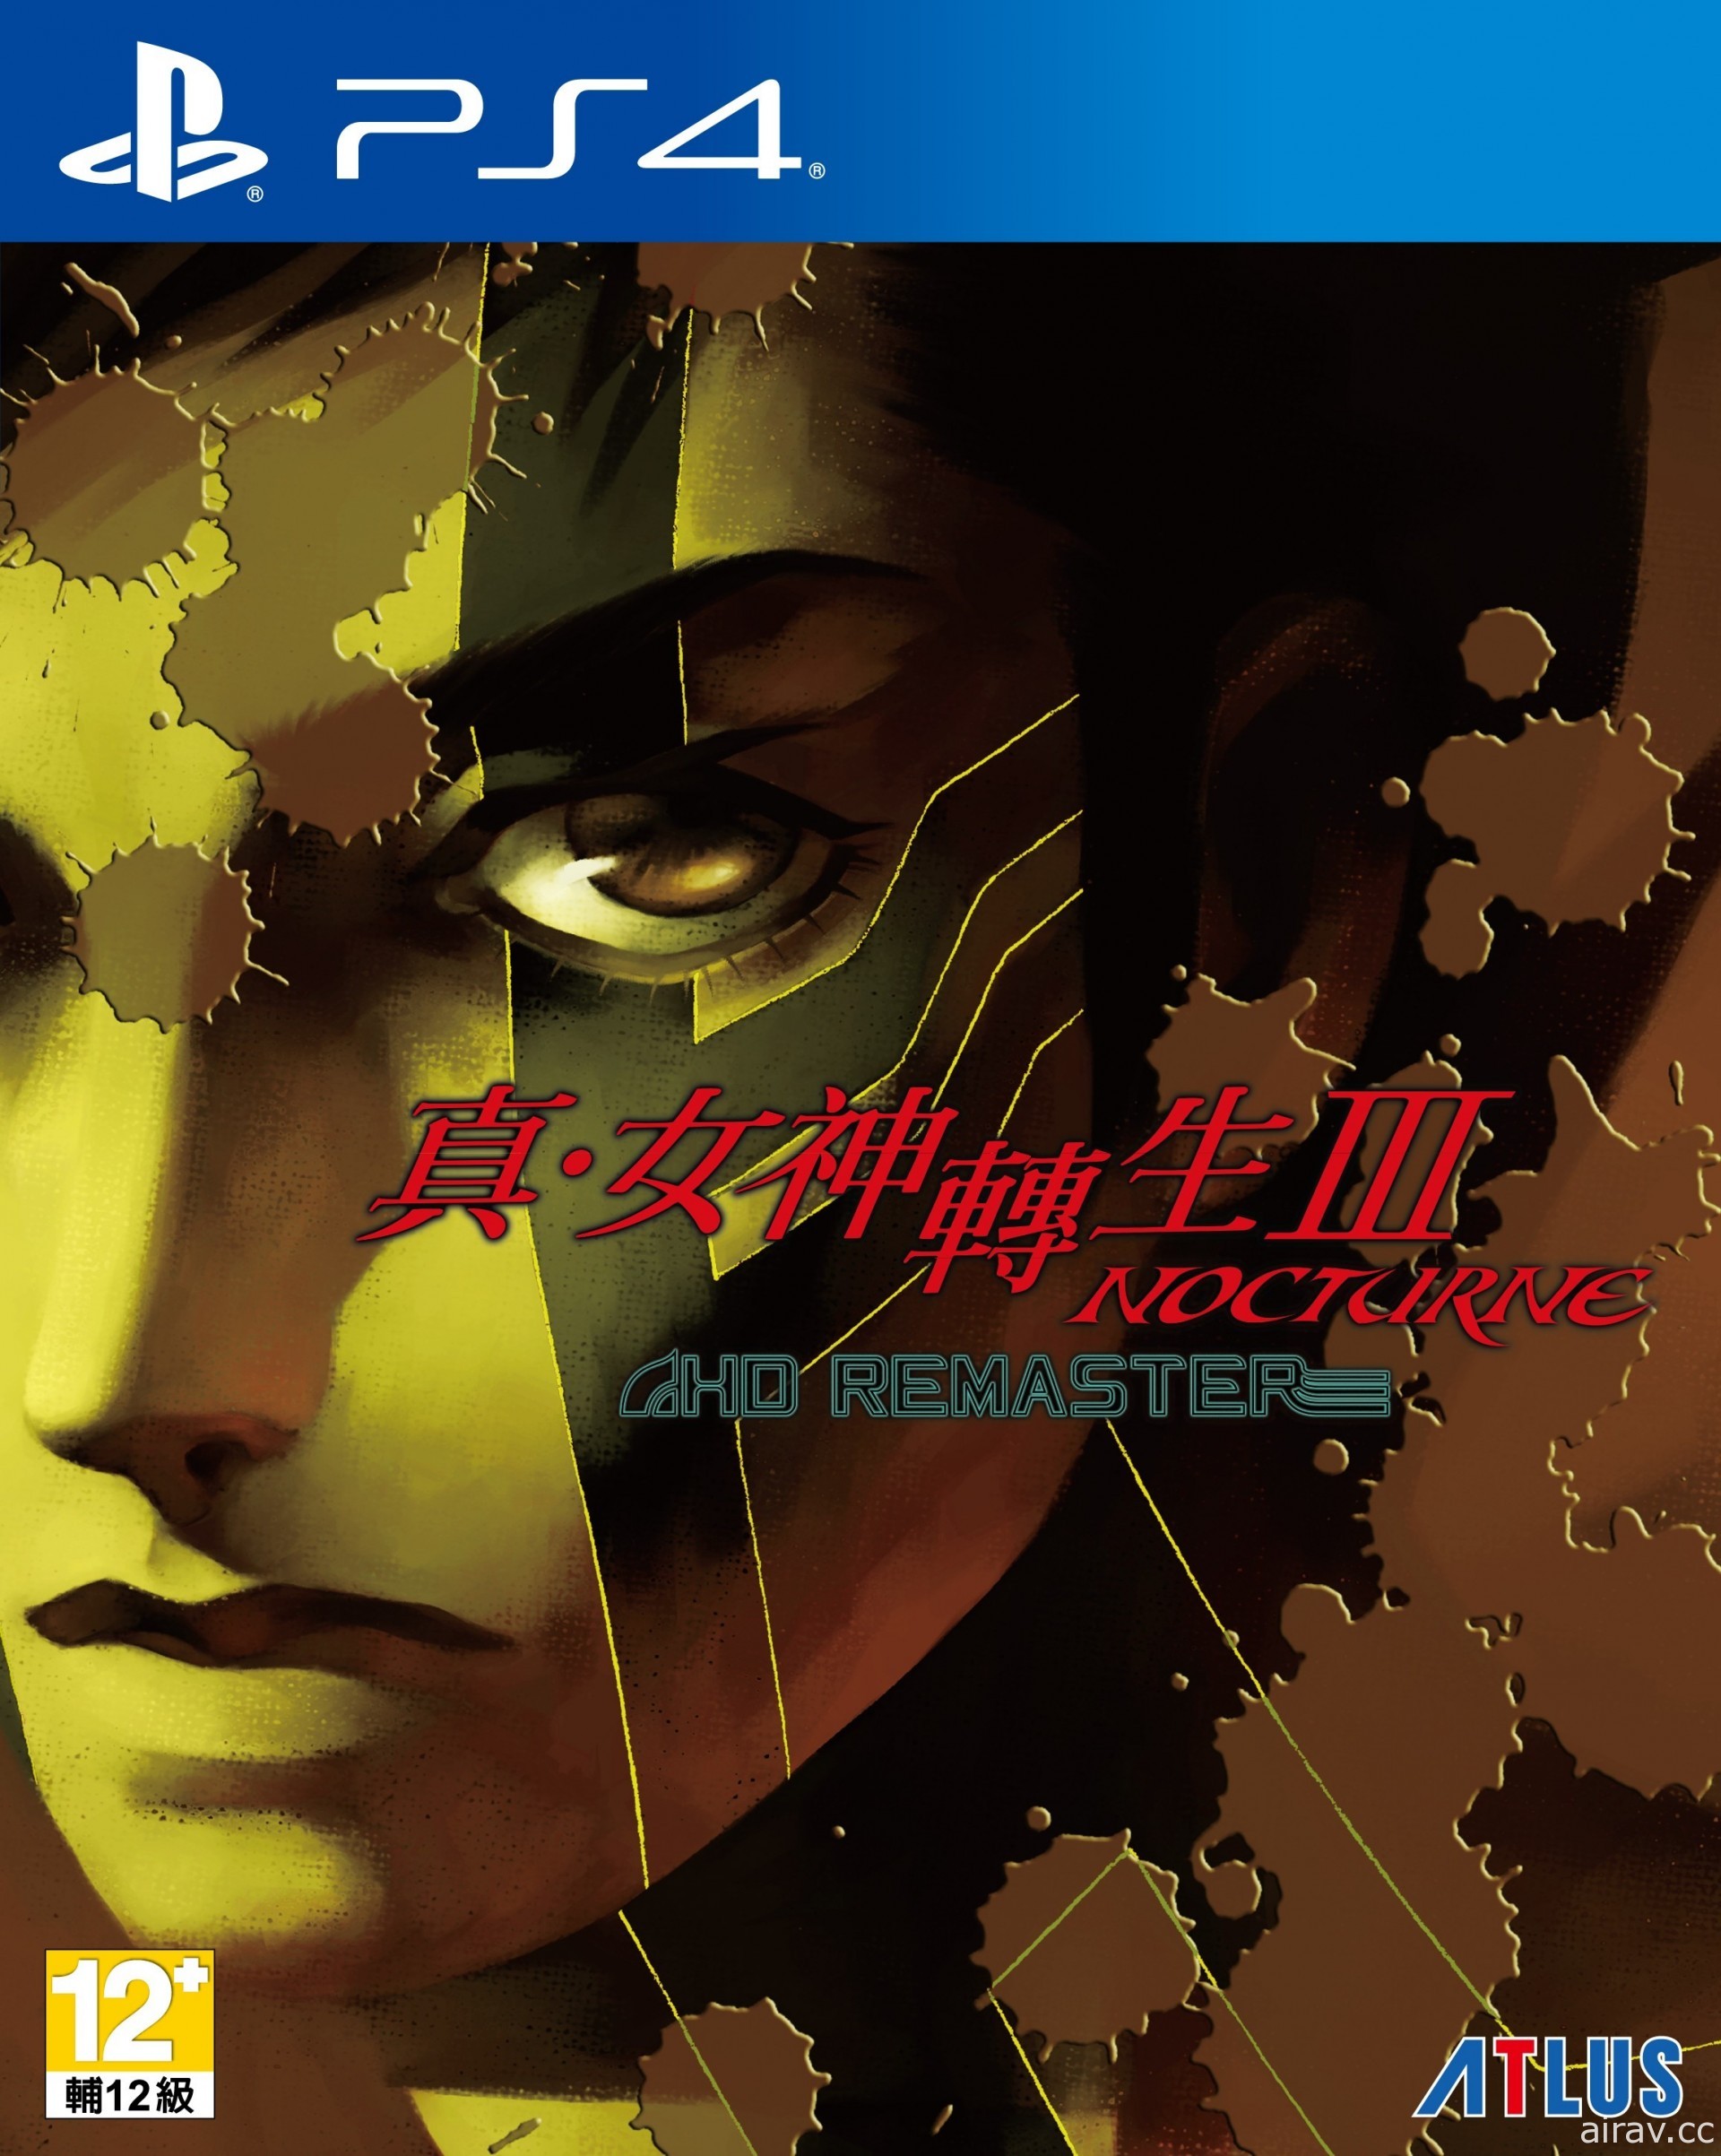 《真‧女神转生 III Nocturne HD Remaster》“恶魔全书 PV”将连续 3 天依序公开